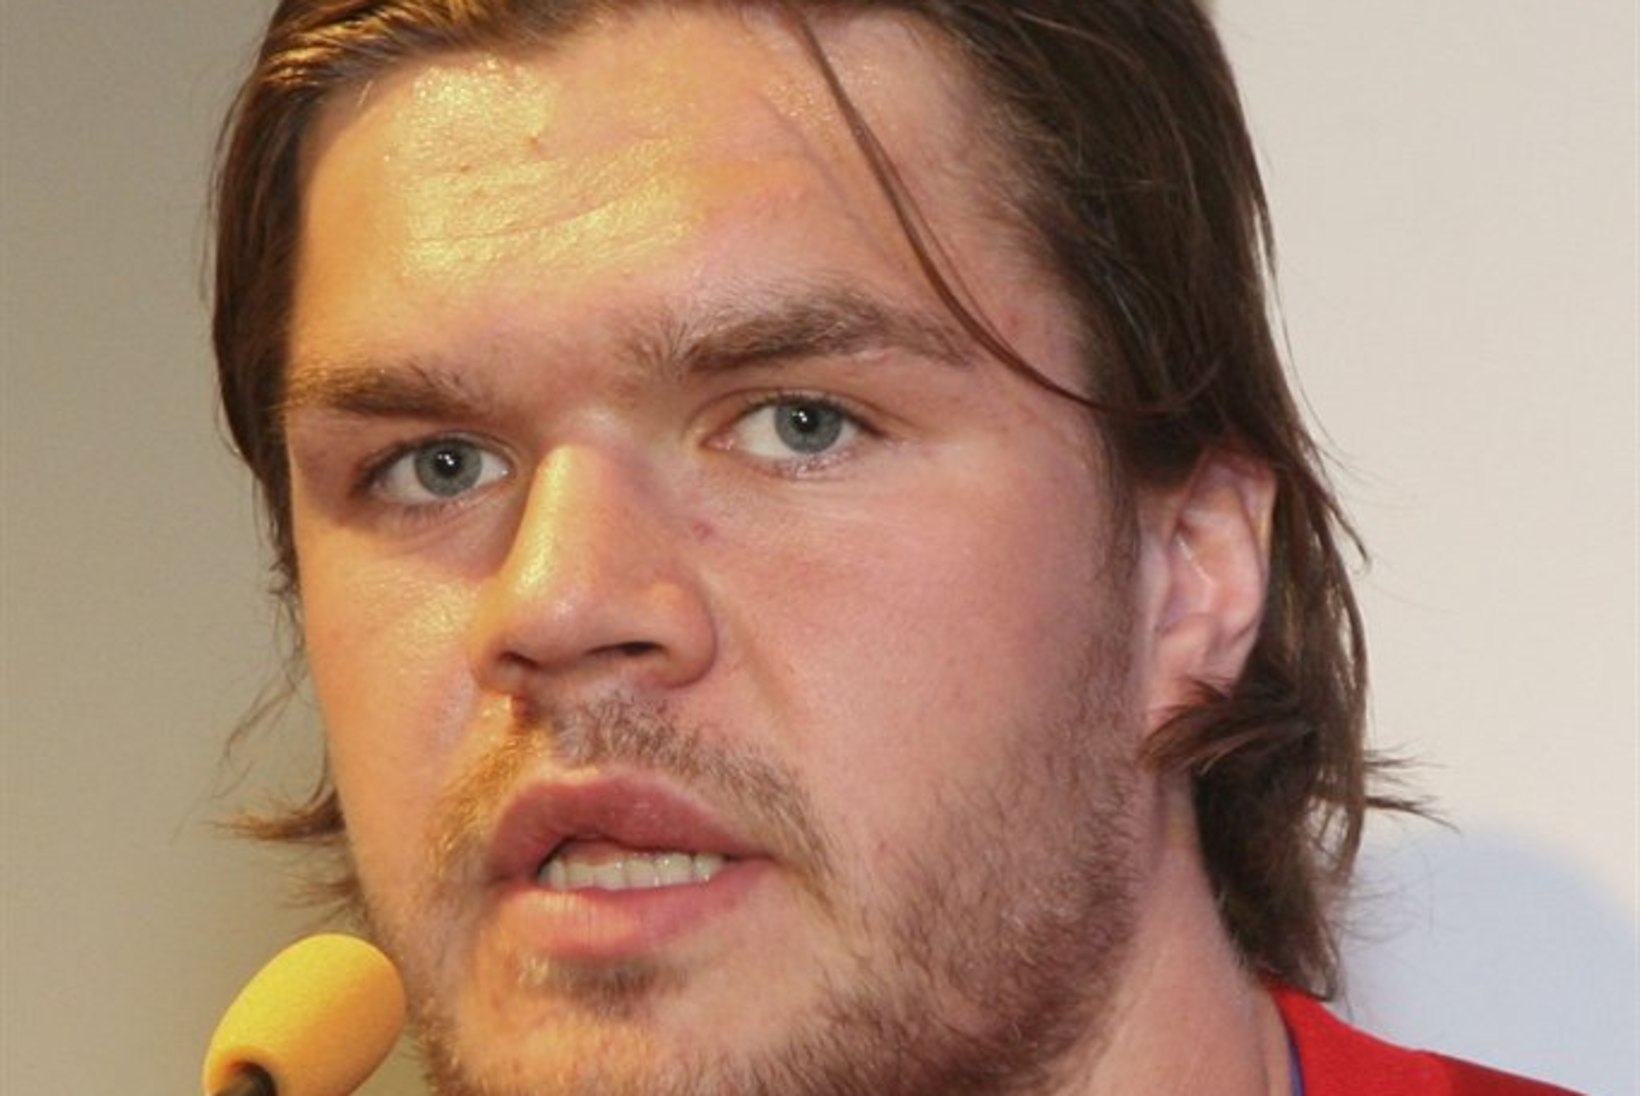 Eestlane Soome hokiskandaali keskmes: NHLi kogemusega mängija sülitas Siim Liivikule verist sülge näkku!